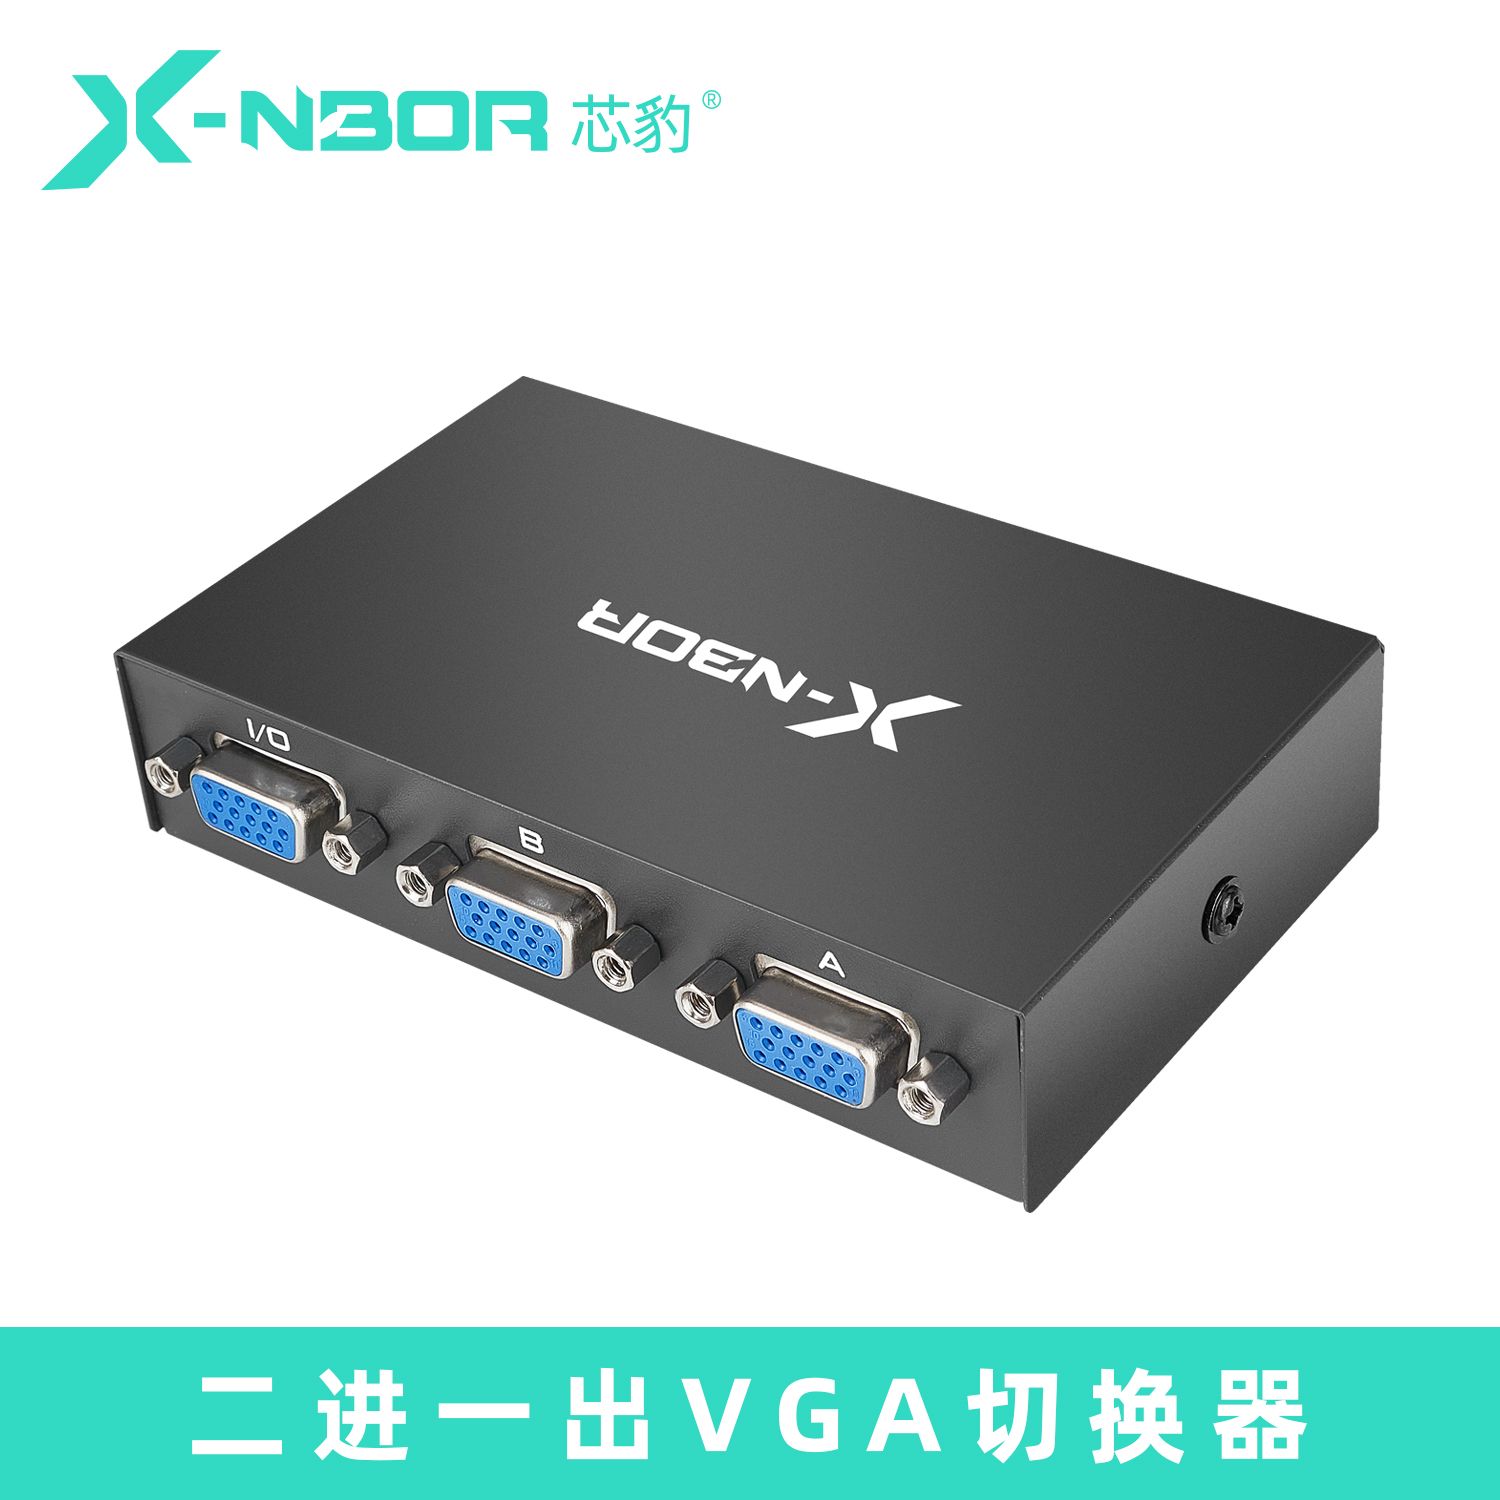 芯豹 VQ21176 二进一出VGA切换器 支持分辨率：1920*1440 60HZ